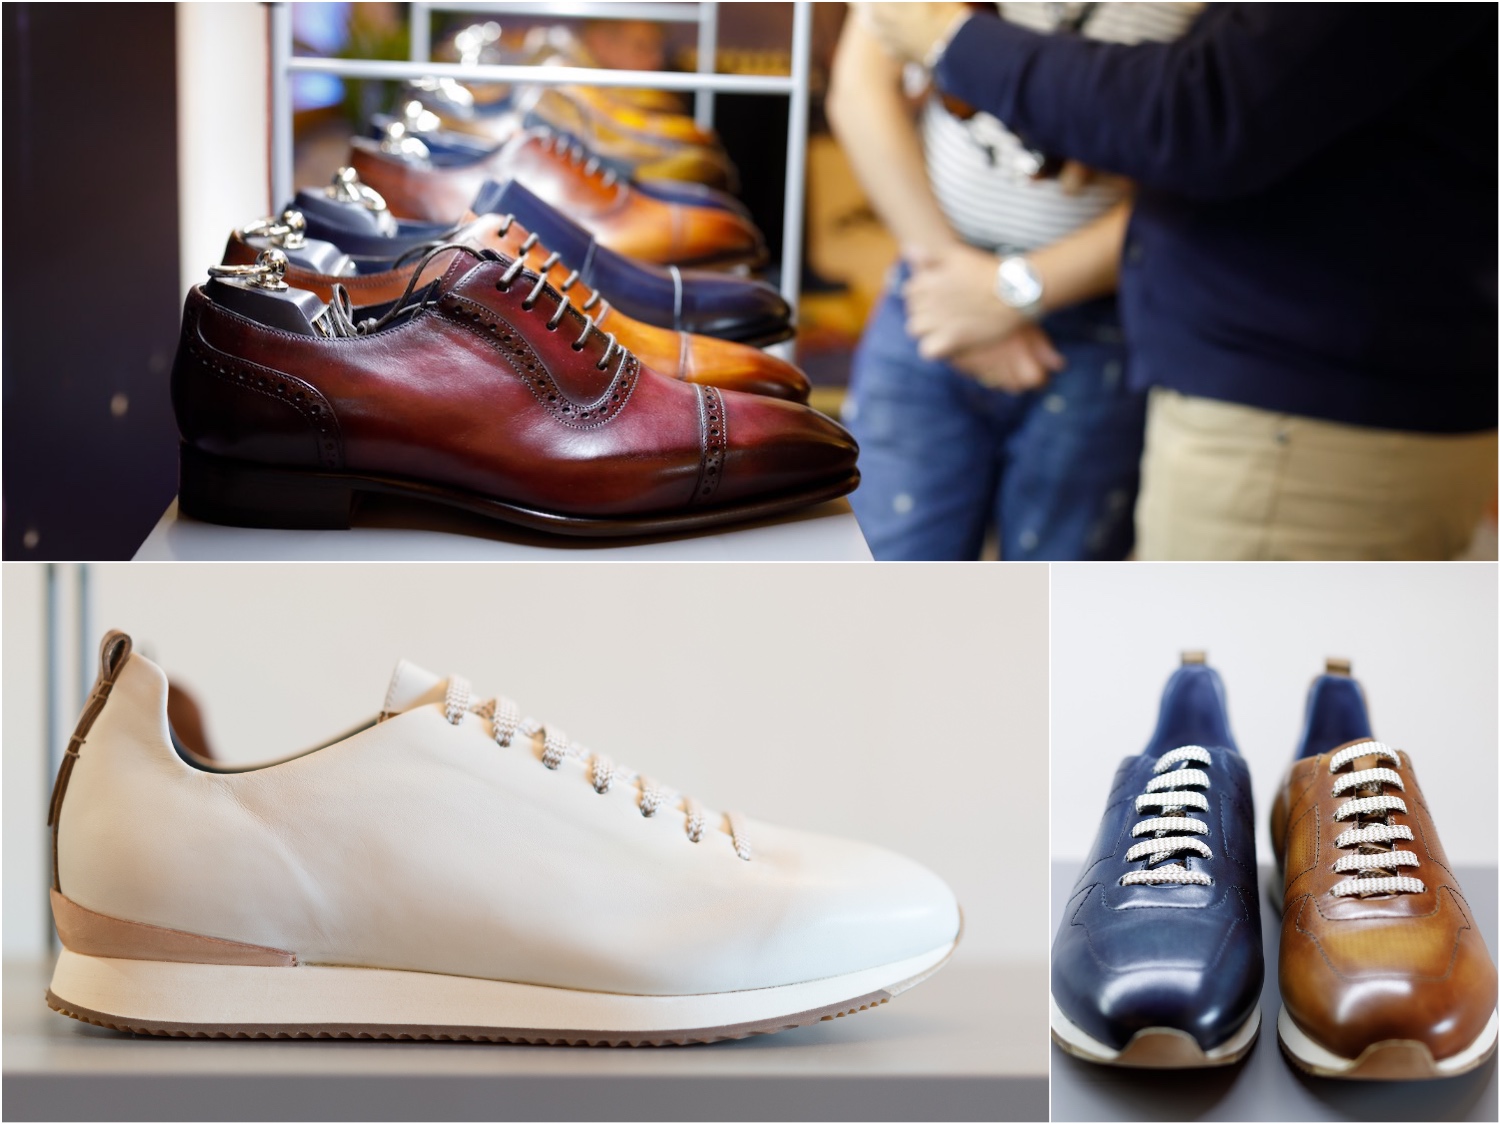 Zampiere produce scarpe artigianali d'eccellenza e rappresenta l'incontro virtuoso tra design spagnolo e alta qualità dei materiali italiani